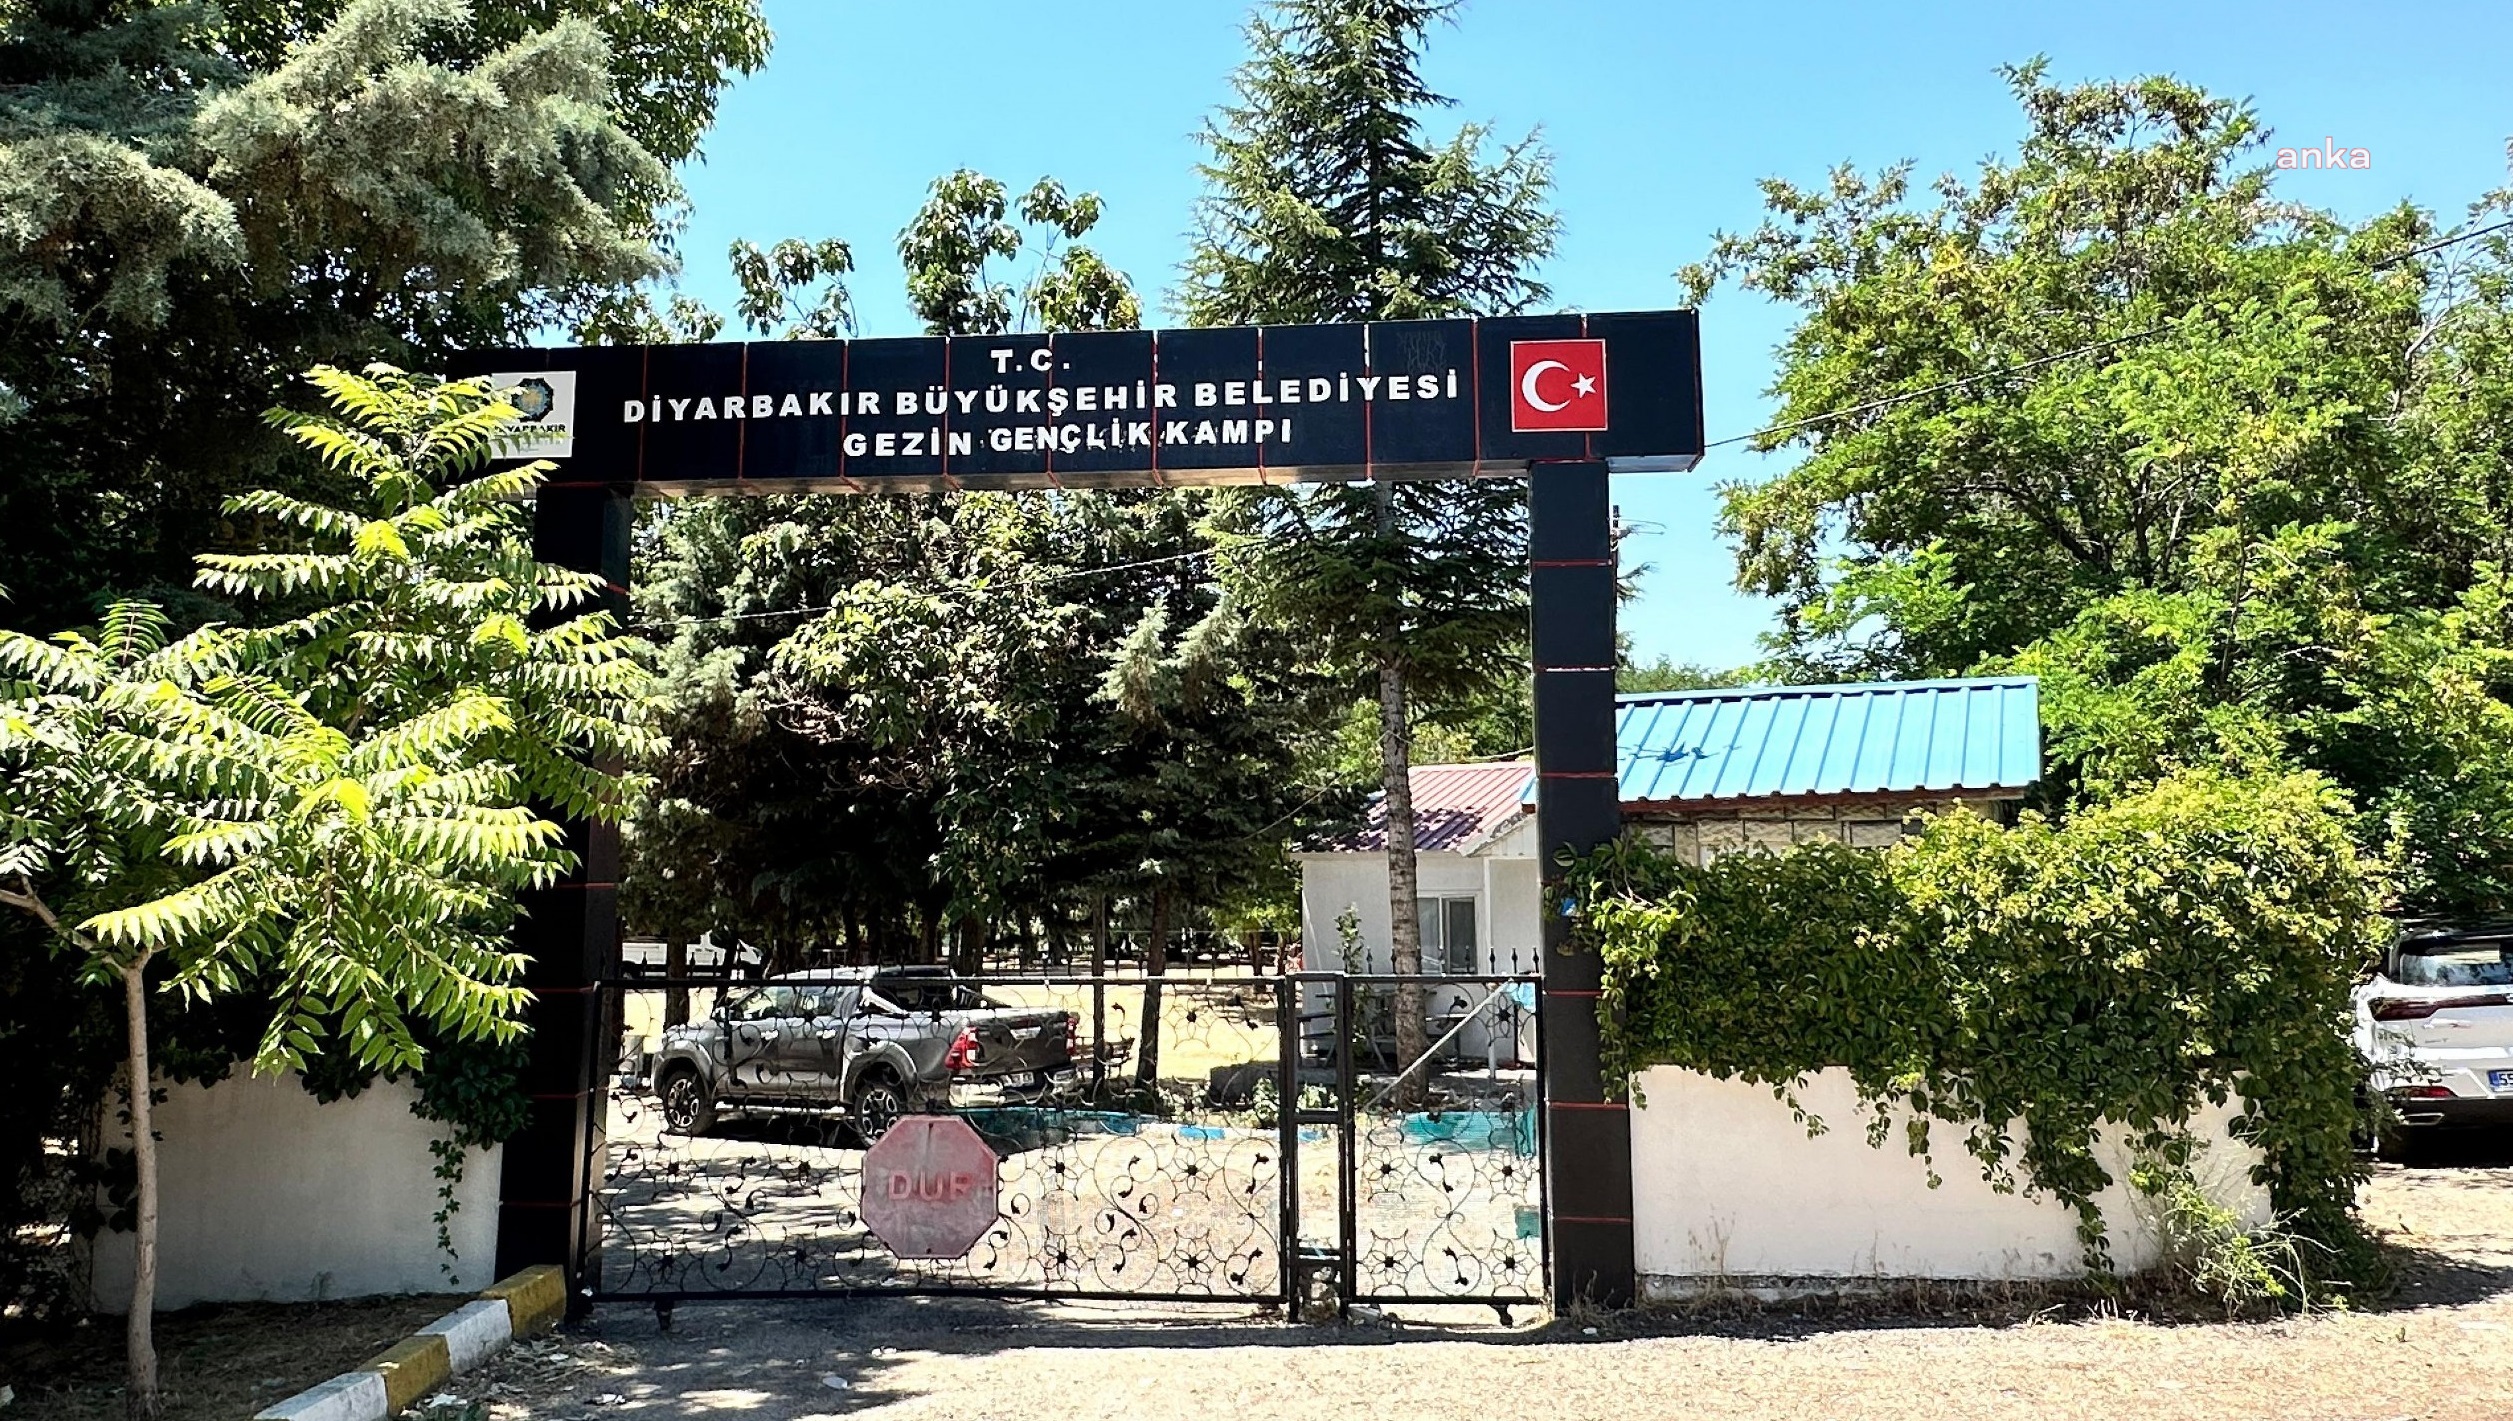 Diyarbakır Büyükşehir Belediyesi, kayyumun devrettiği gençlik kampının tahsisini iptal etti